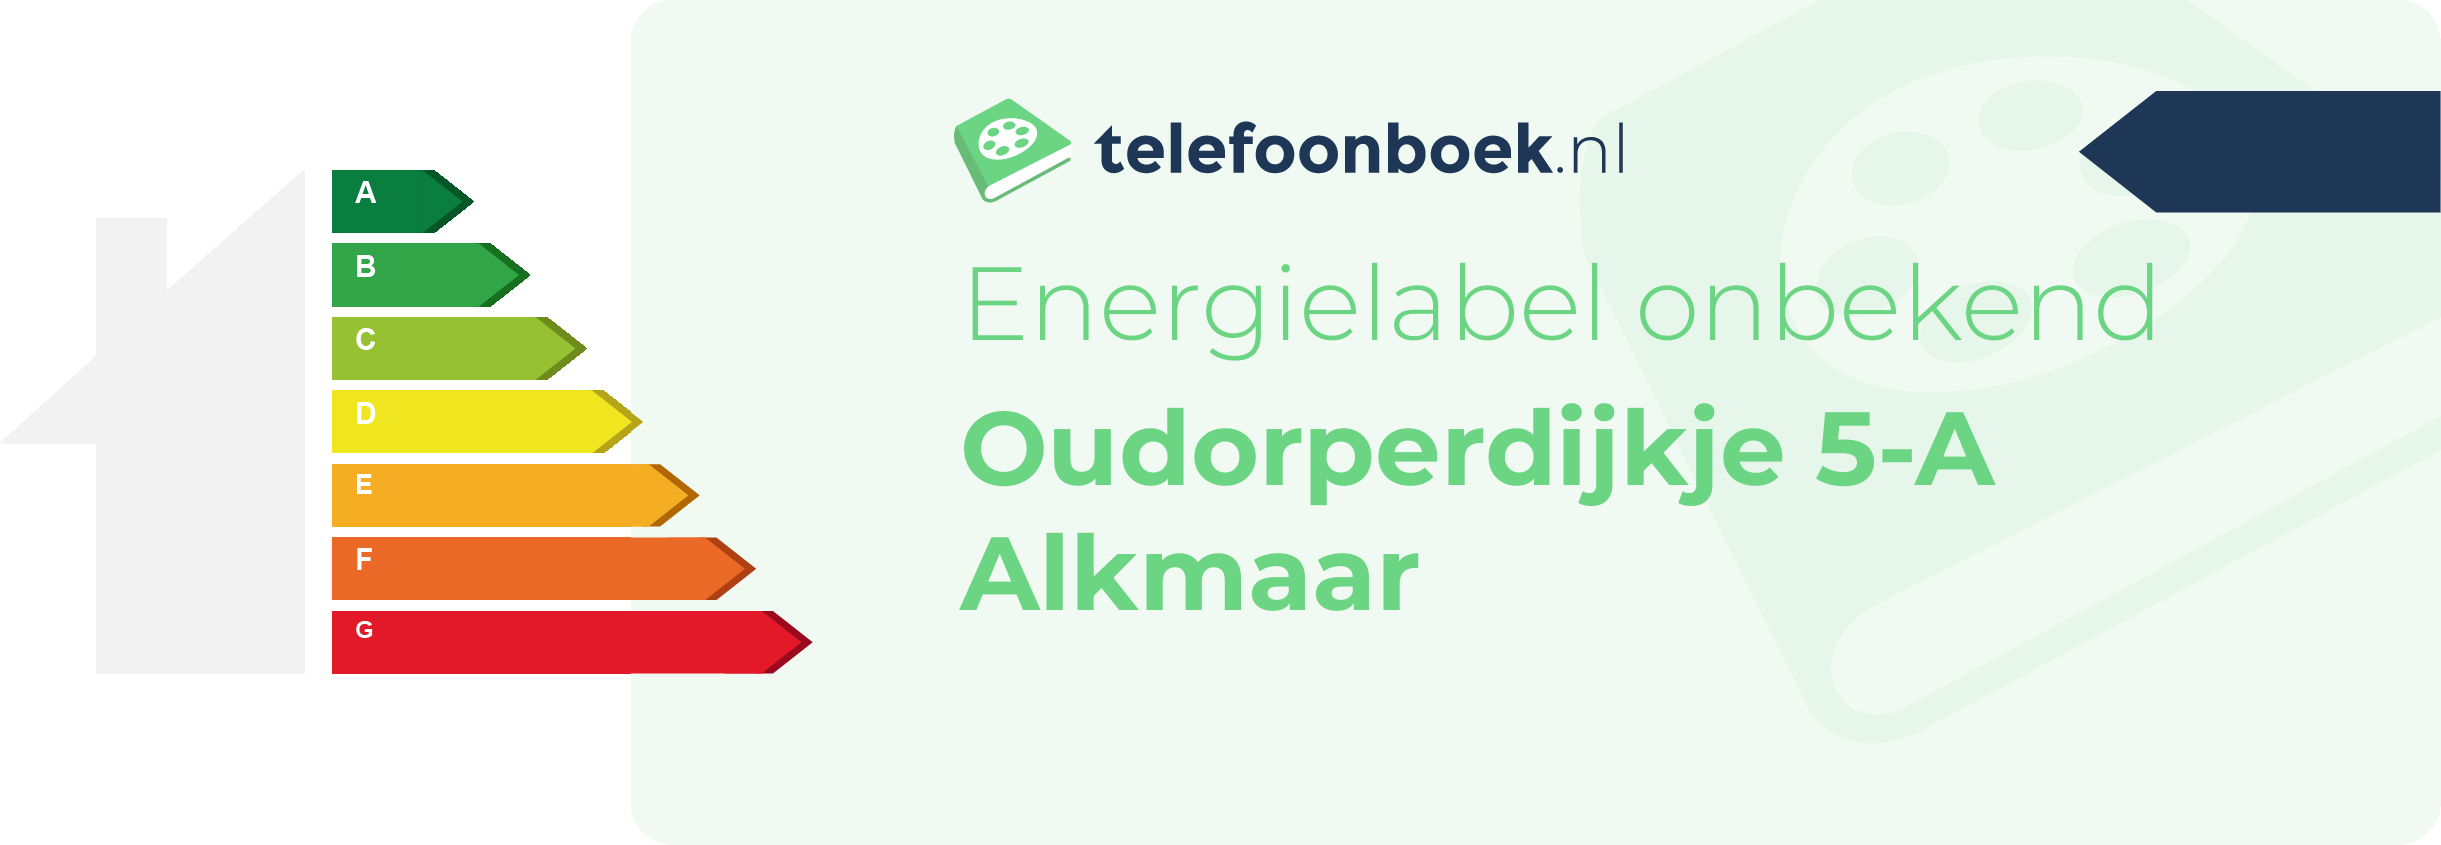 Energielabel Oudorperdijkje 5-A Alkmaar